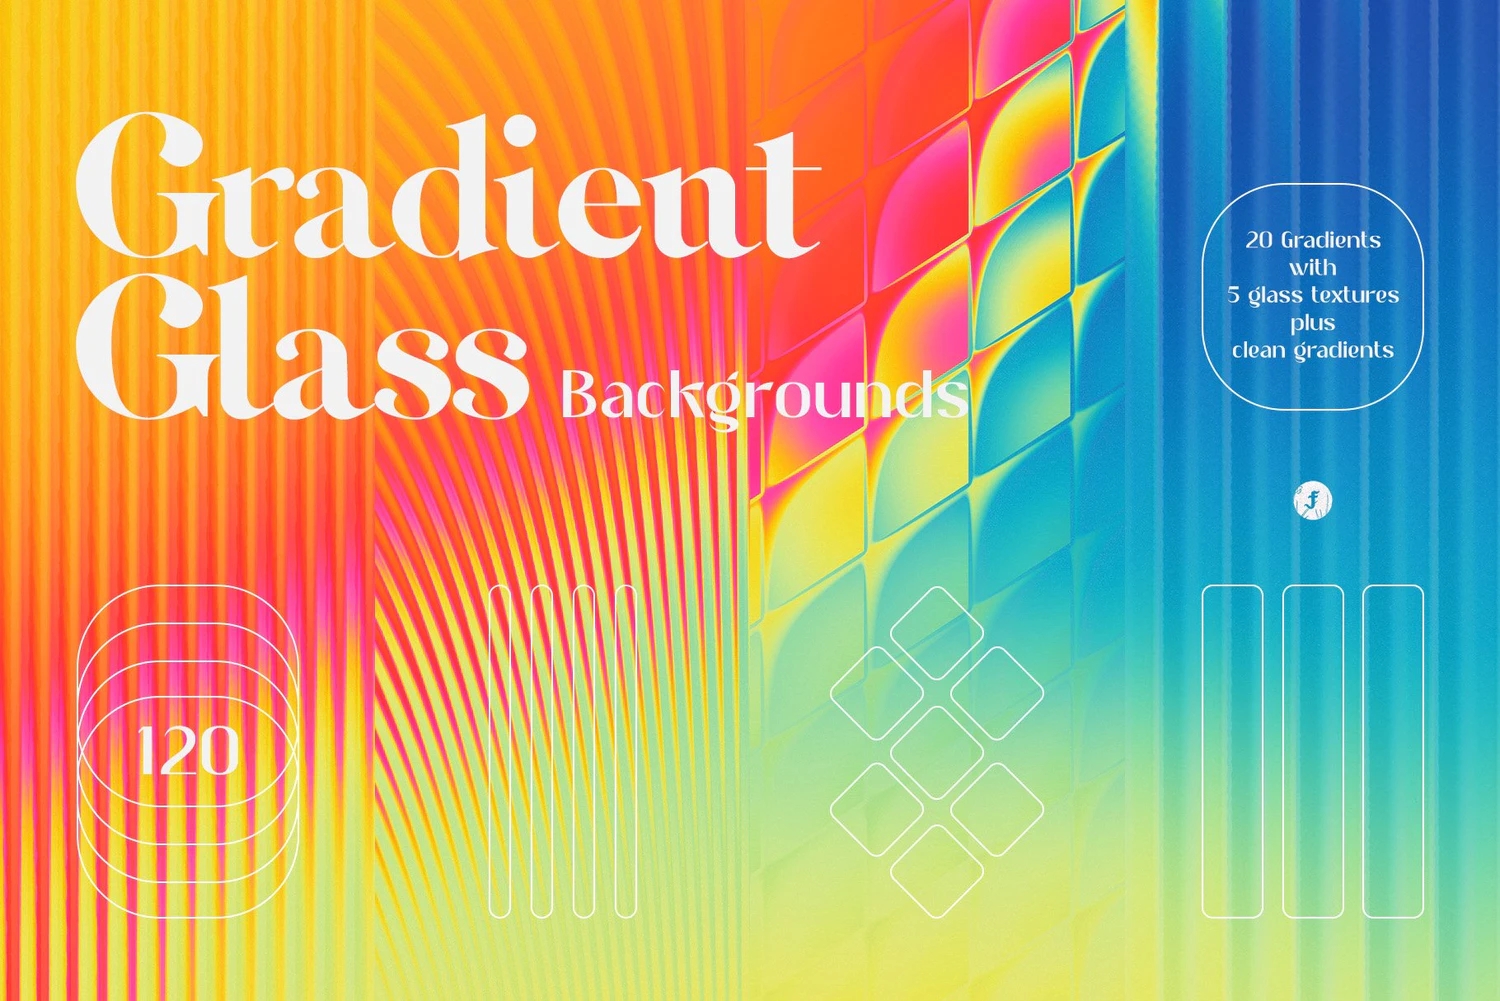 22意时尚炫彩条纹长虹玻璃迷幻渐变海报背景底纹图片设计素材 Gradient Glass BackgroundsYC333